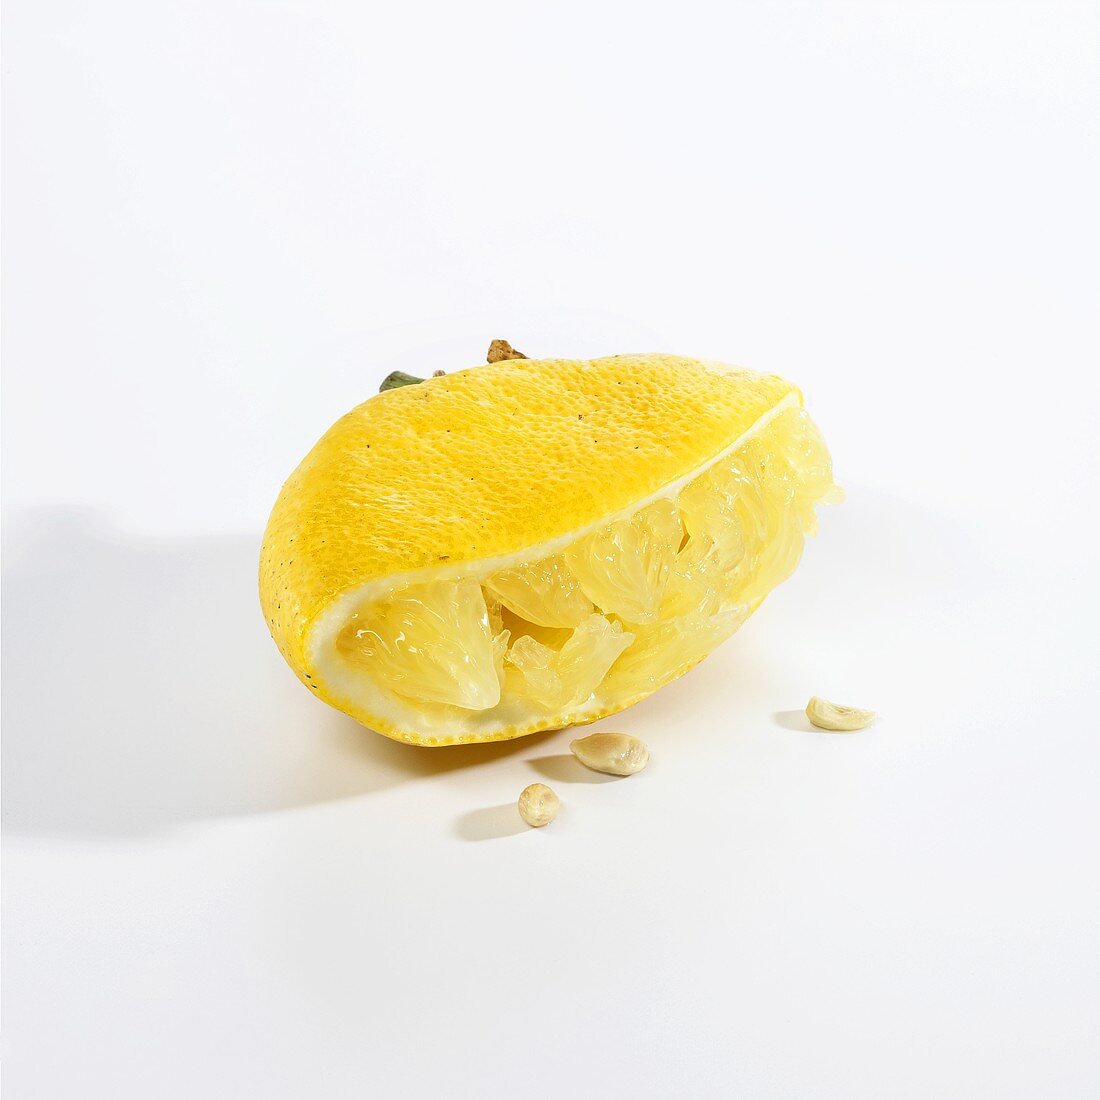 Eine ausgepresste Zitronenhälfte